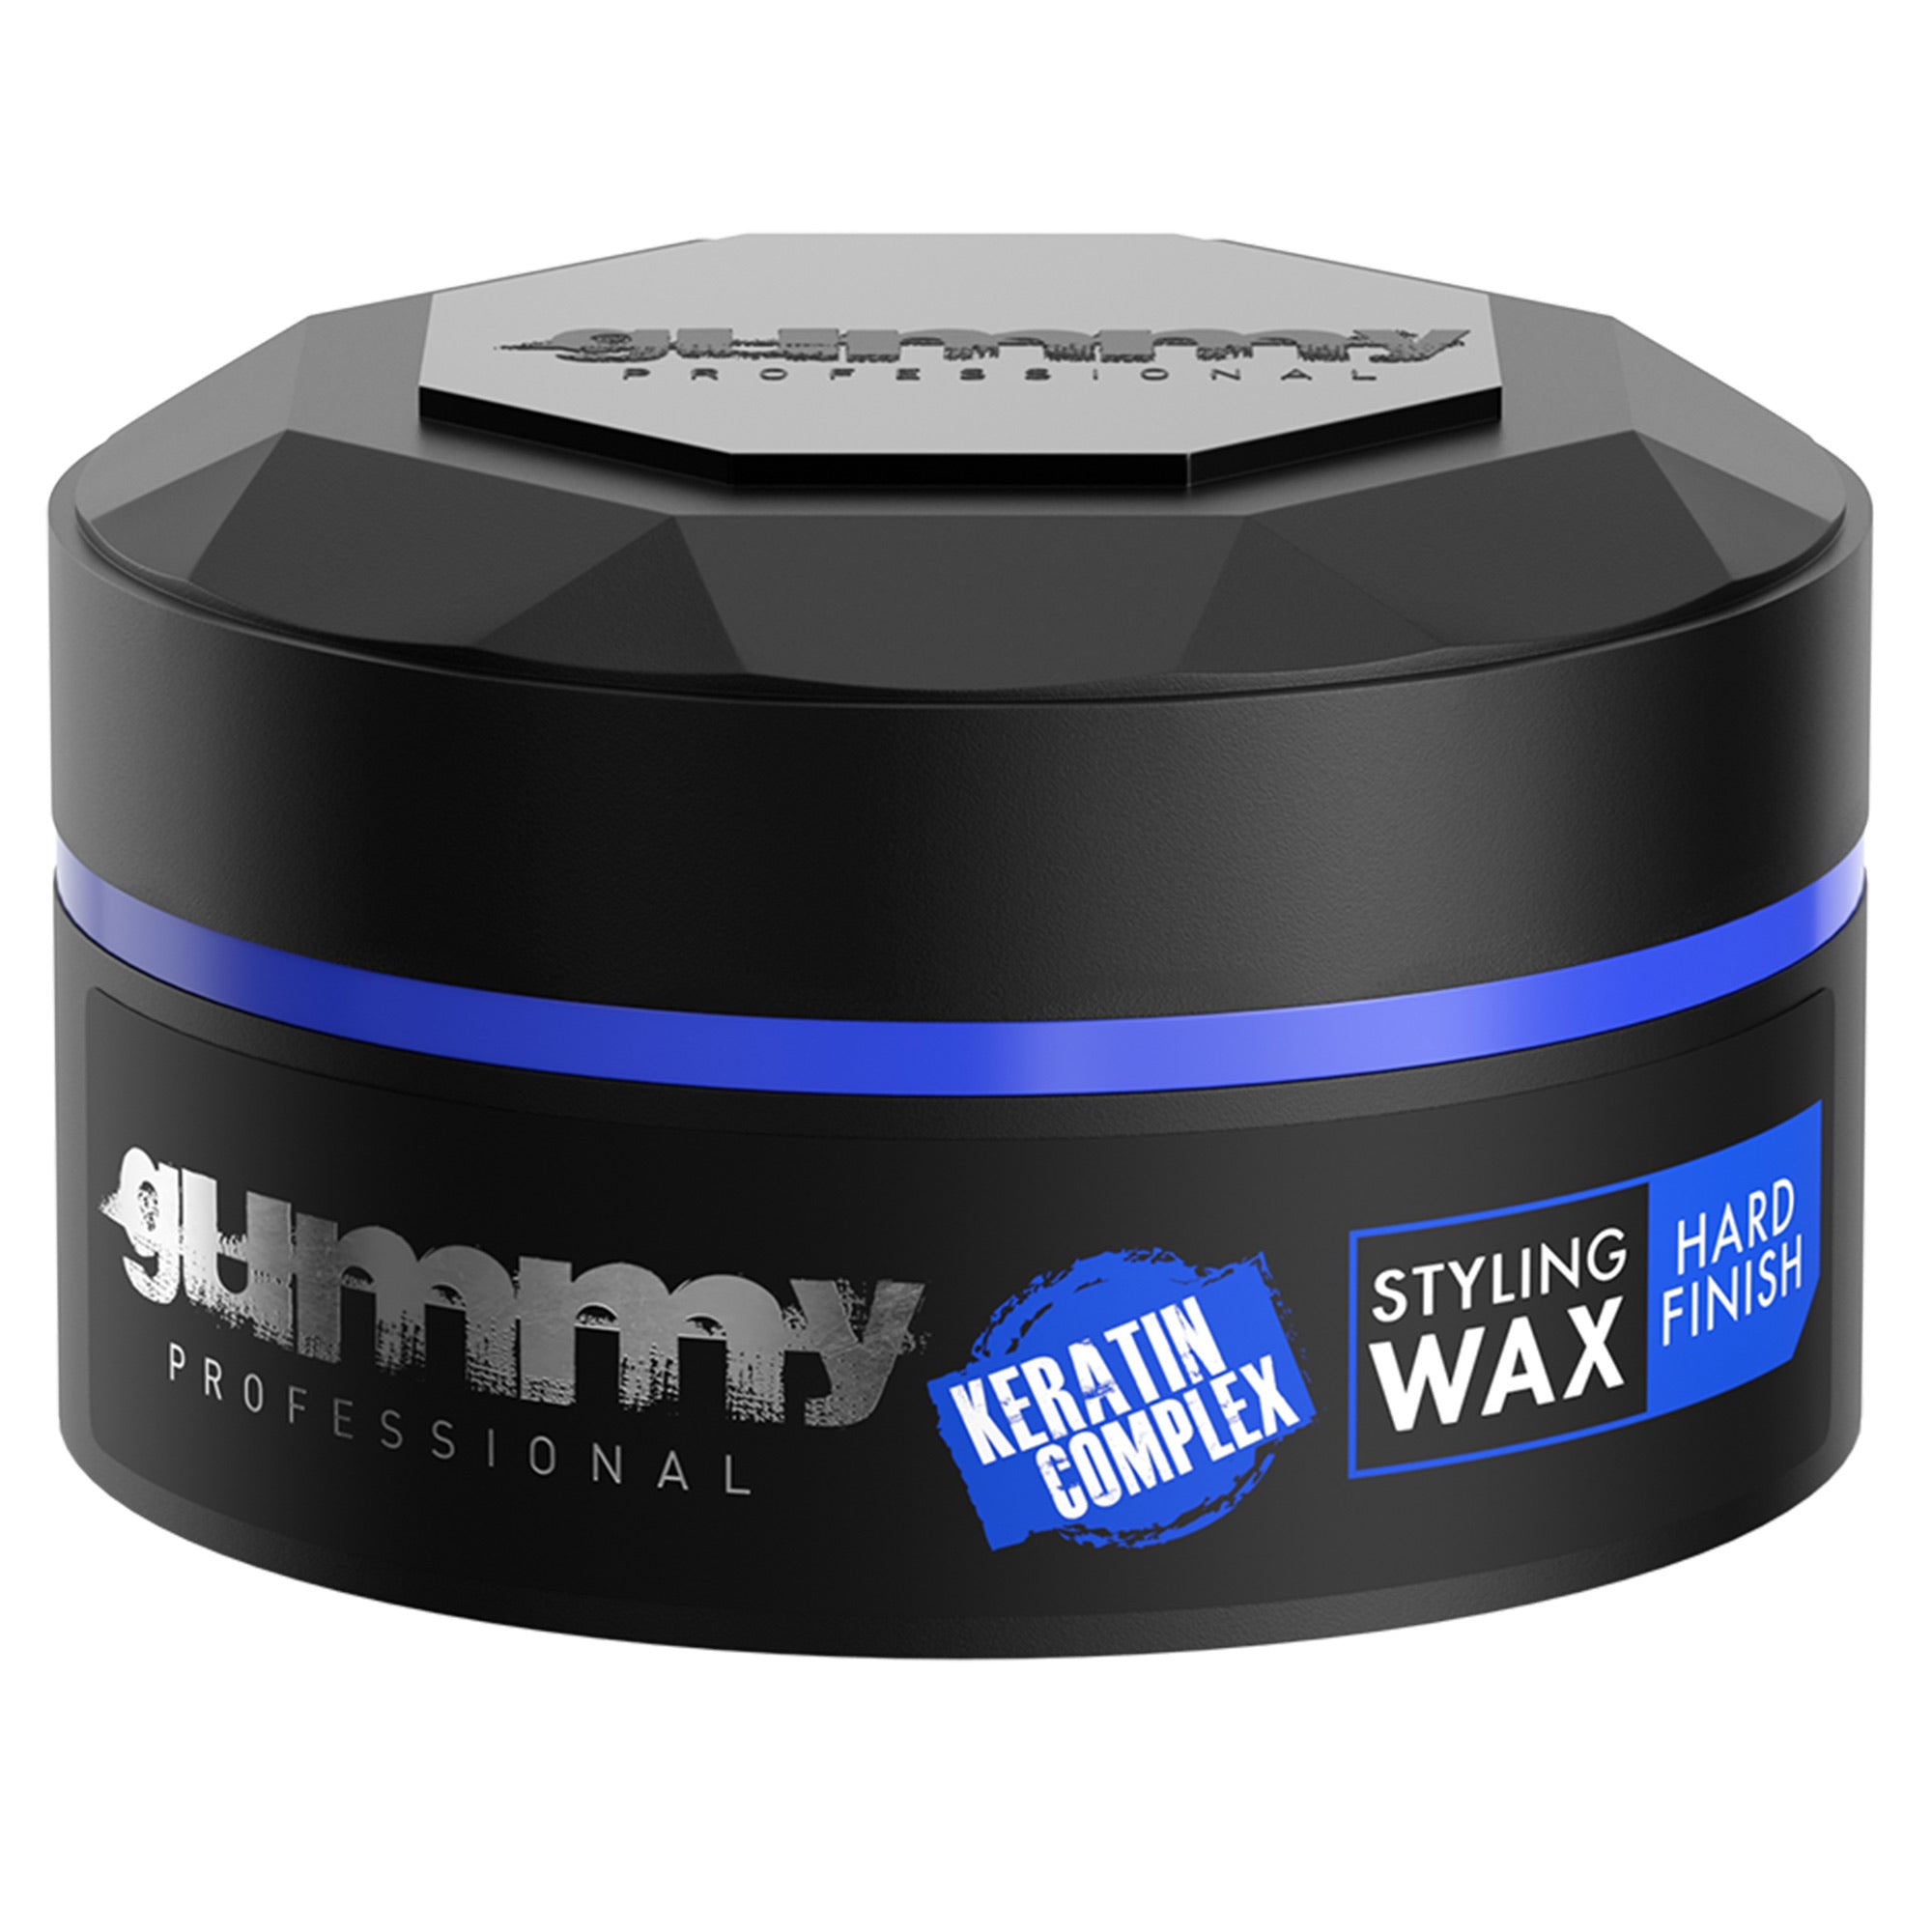 Gummy - Styling Wax Hard Finish Keratin Complex 150ml